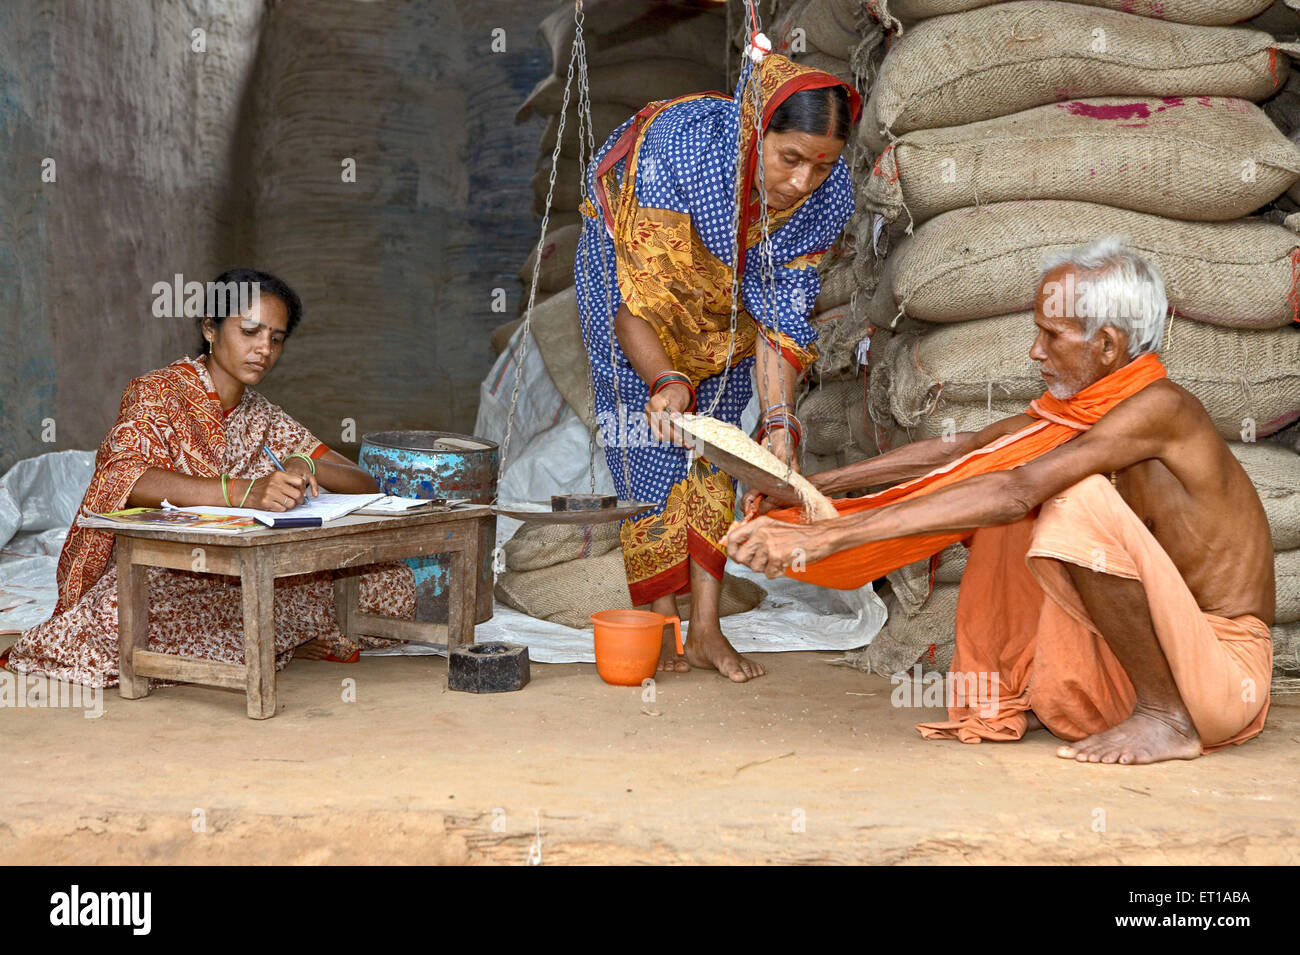 Ländliche Frauen verteilen Getreide und verwalten Subsistenzgeschäft eine Initiative der NGO Chinmaya Organisation Indien Asien Asiatisch Indisch gestartet Stockfoto